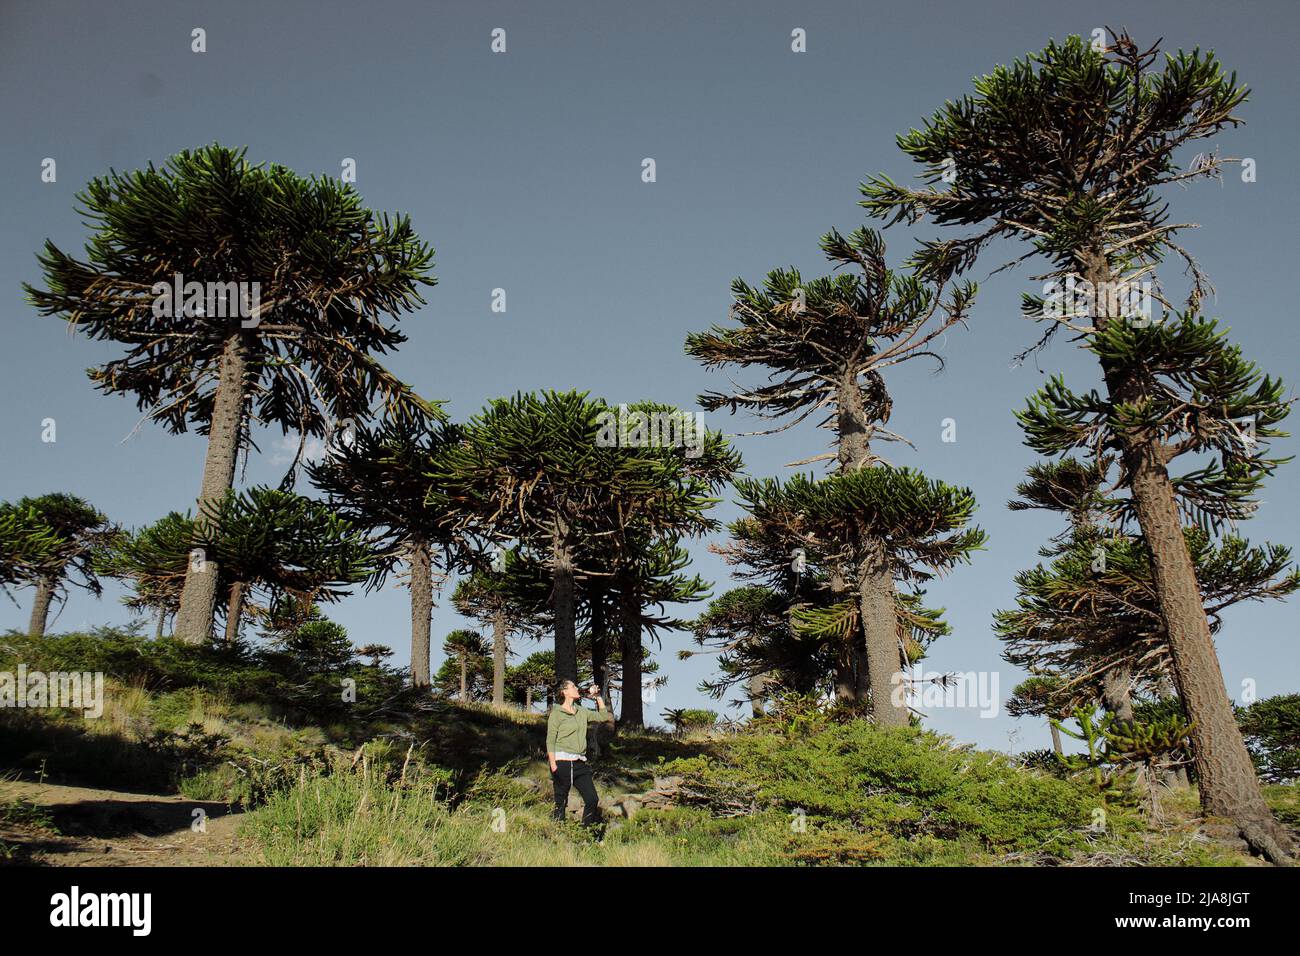 Araucaria o Pehuen, árbol milenario de la patagonia Stock Photo